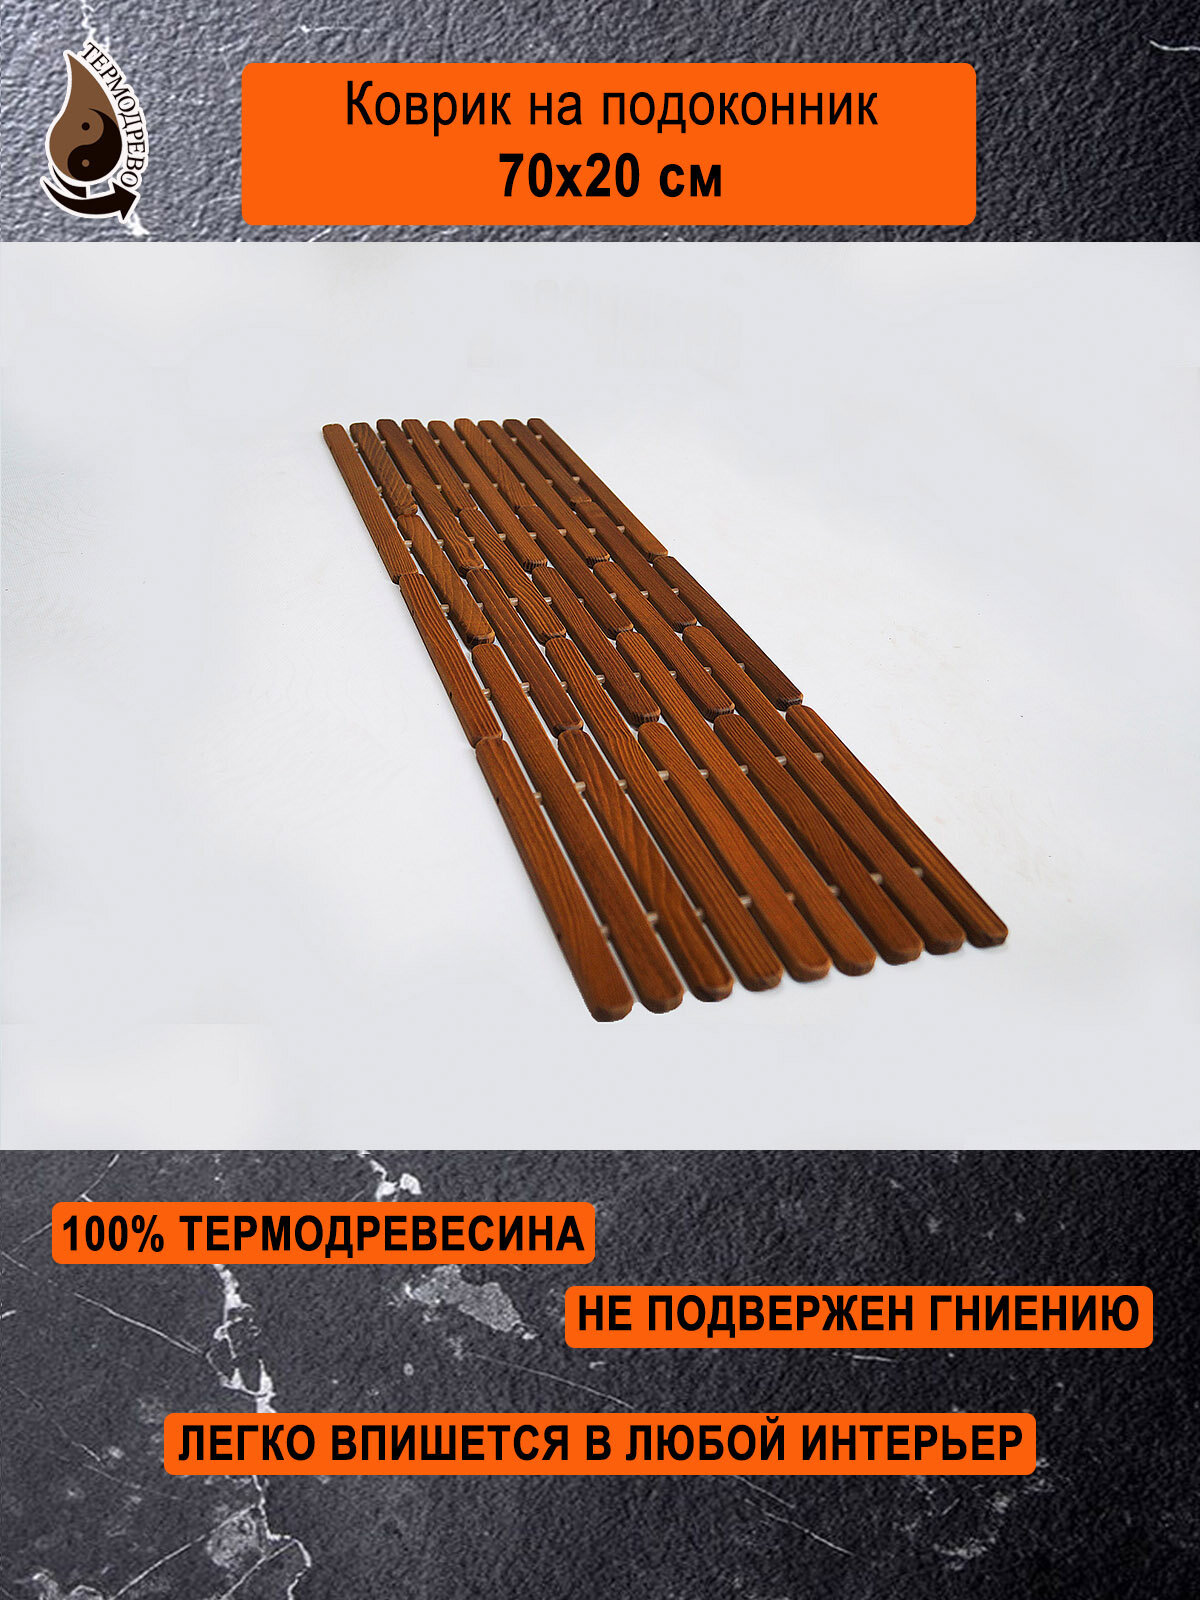 Ковер деревянный влагостойкий универсальный 70х20 см на подоконник / придверный / прикроватный термодрево из массива термо древесины